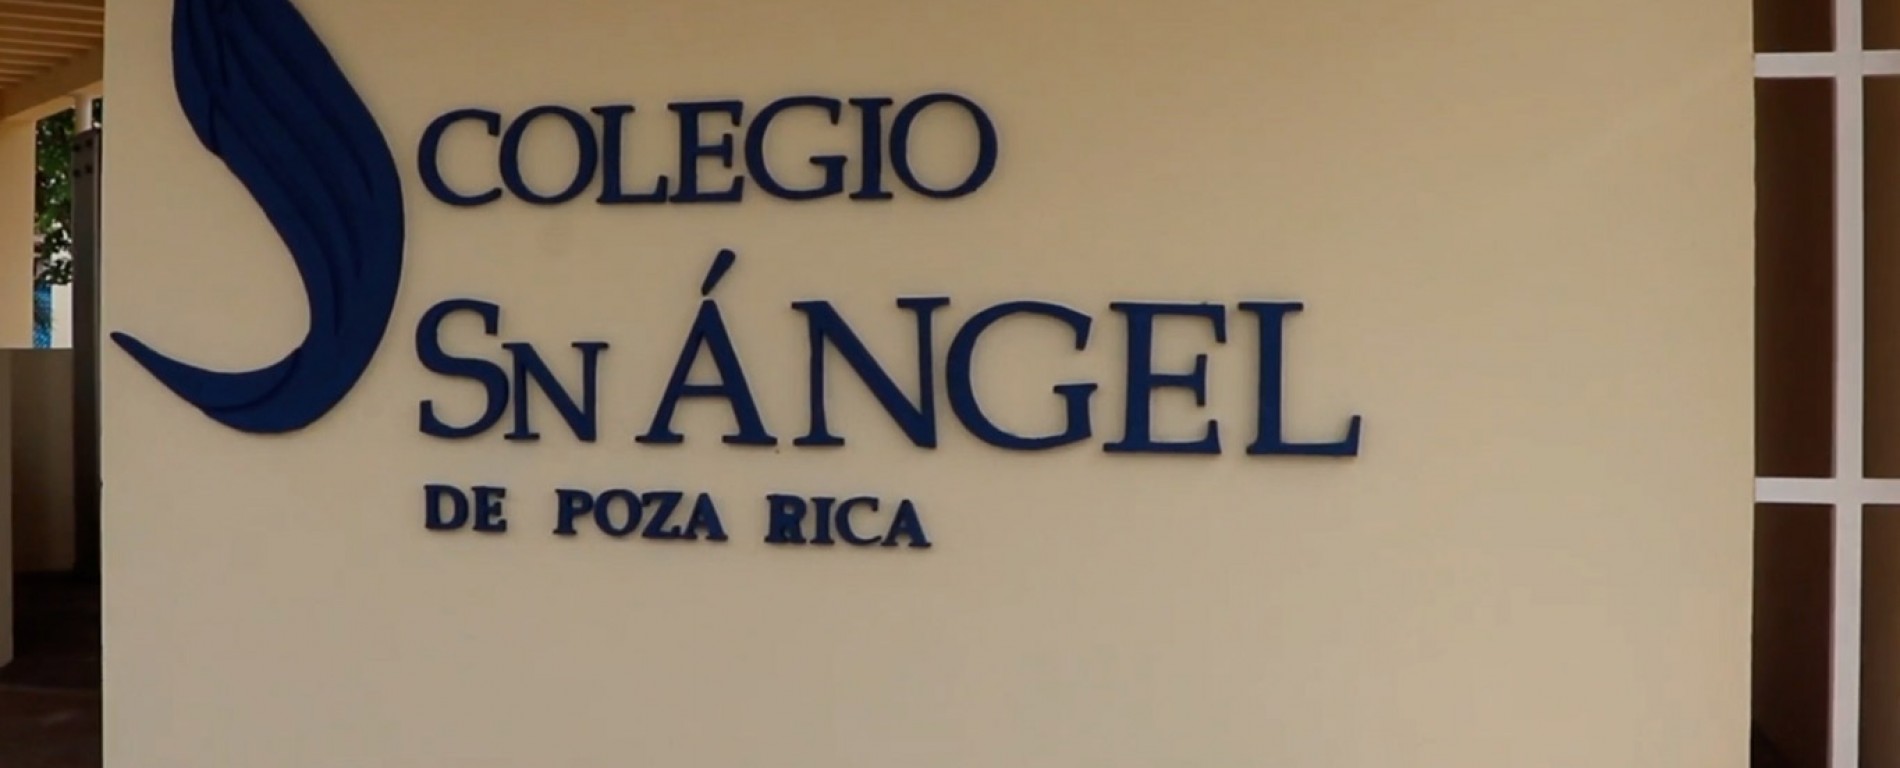 Colegio San Ángel Poza Rica Fachada